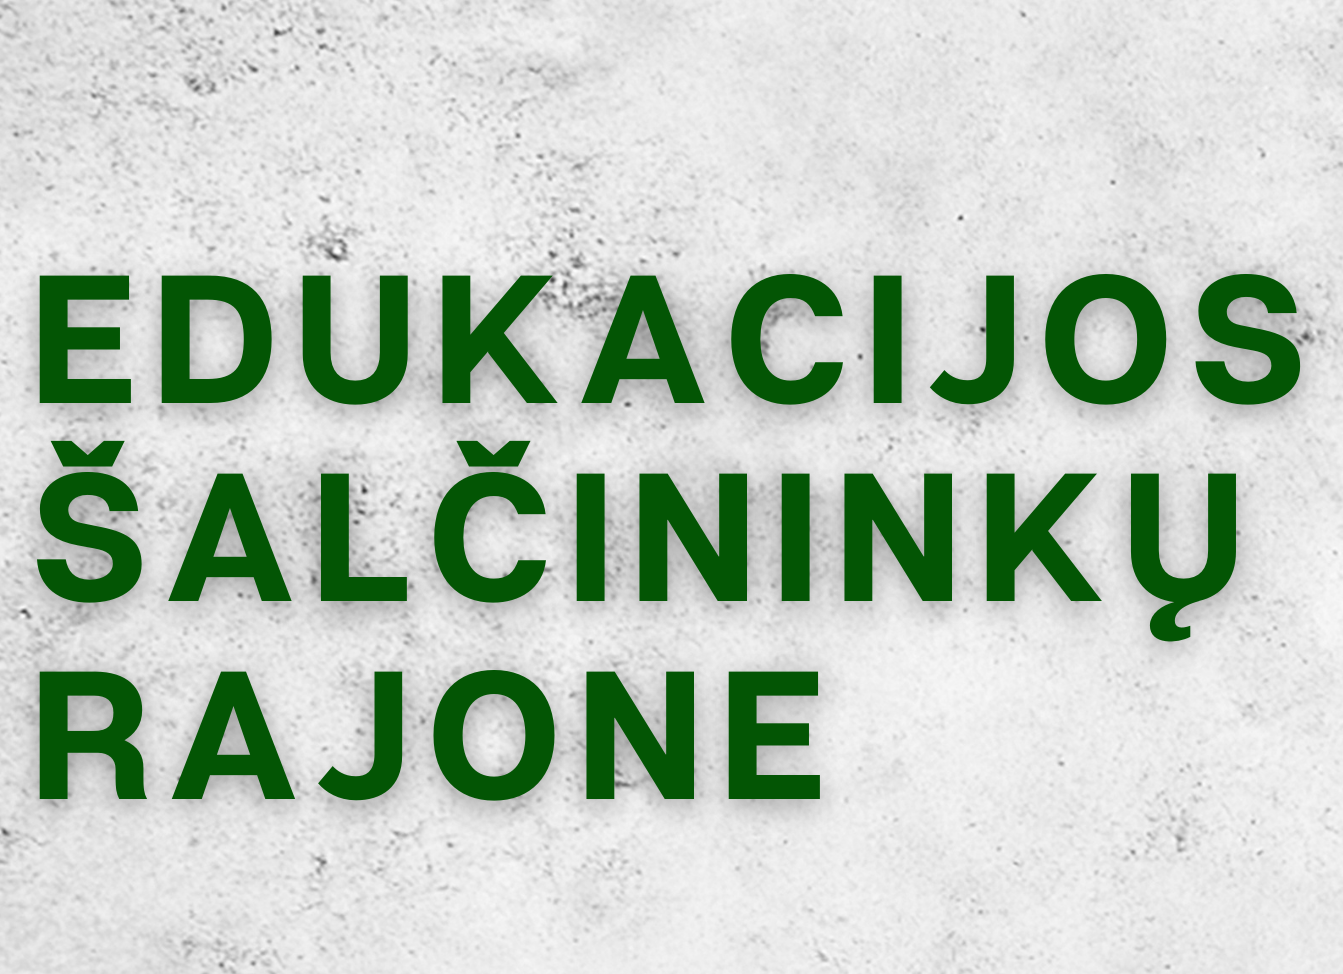 You are currently viewing Lietuvos Valstybės atkūrimo dienai skirti edukaciniai užsiėmimai Šalčininkų rajone